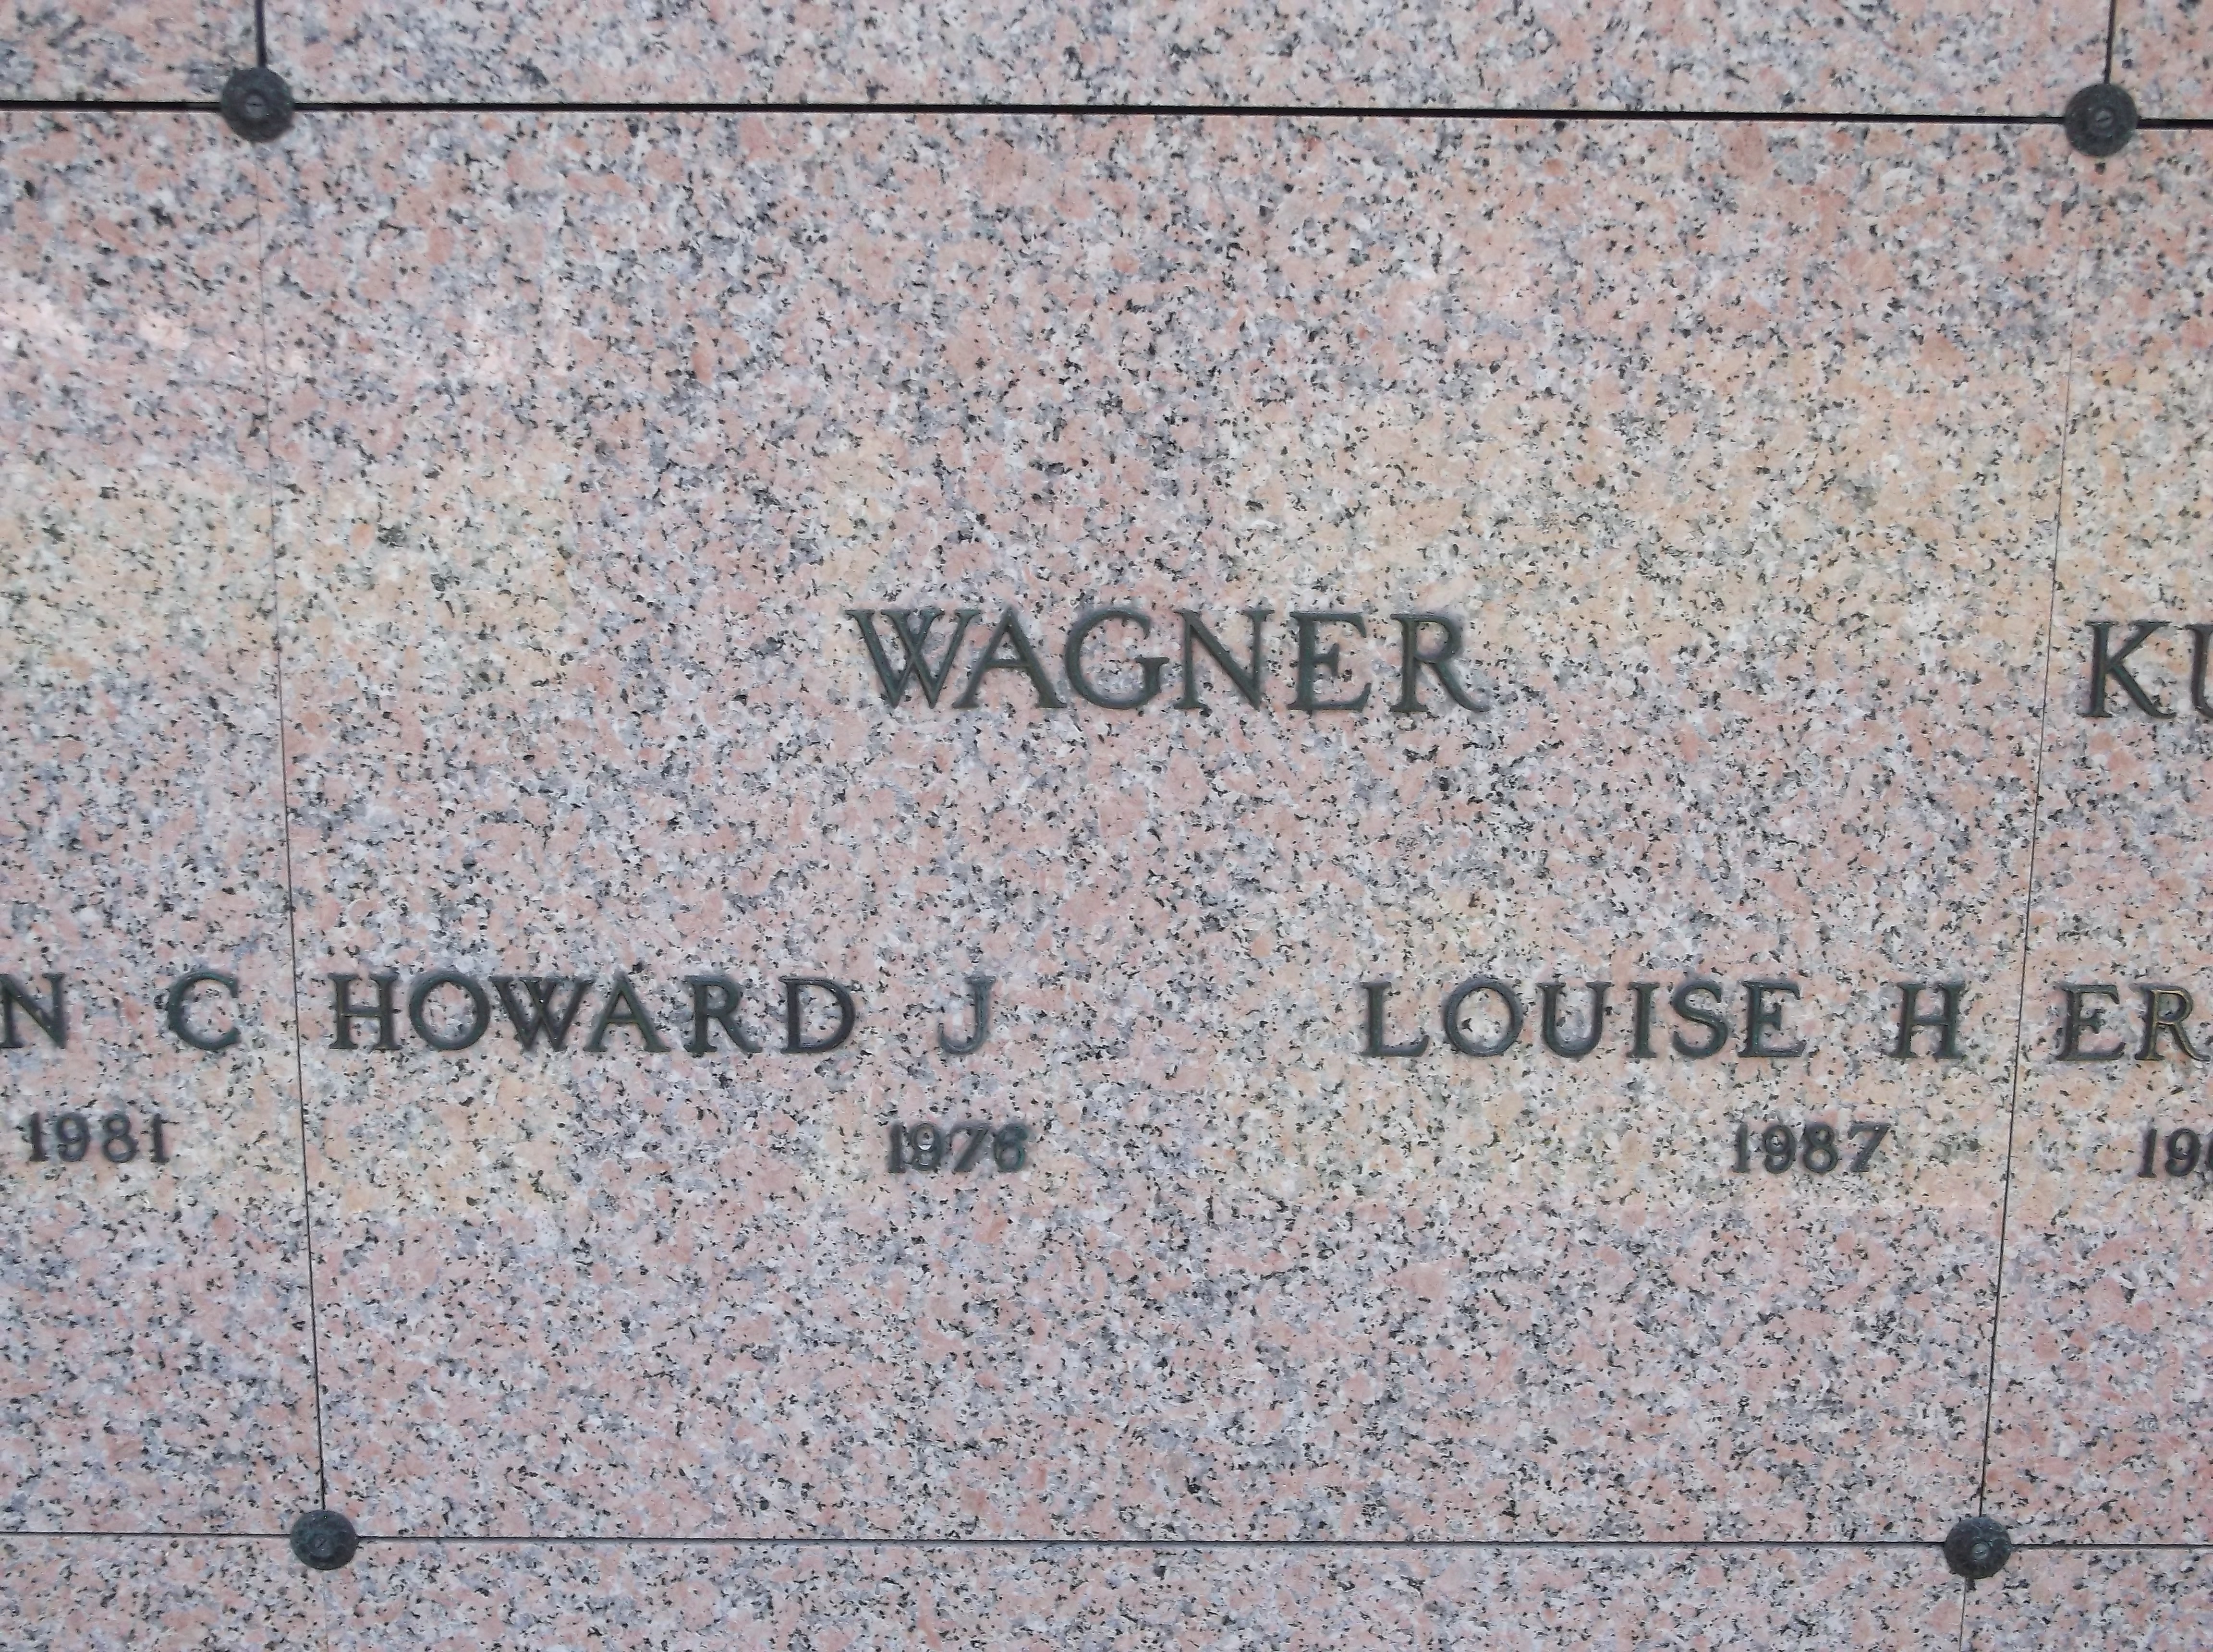 Howard J Wagner